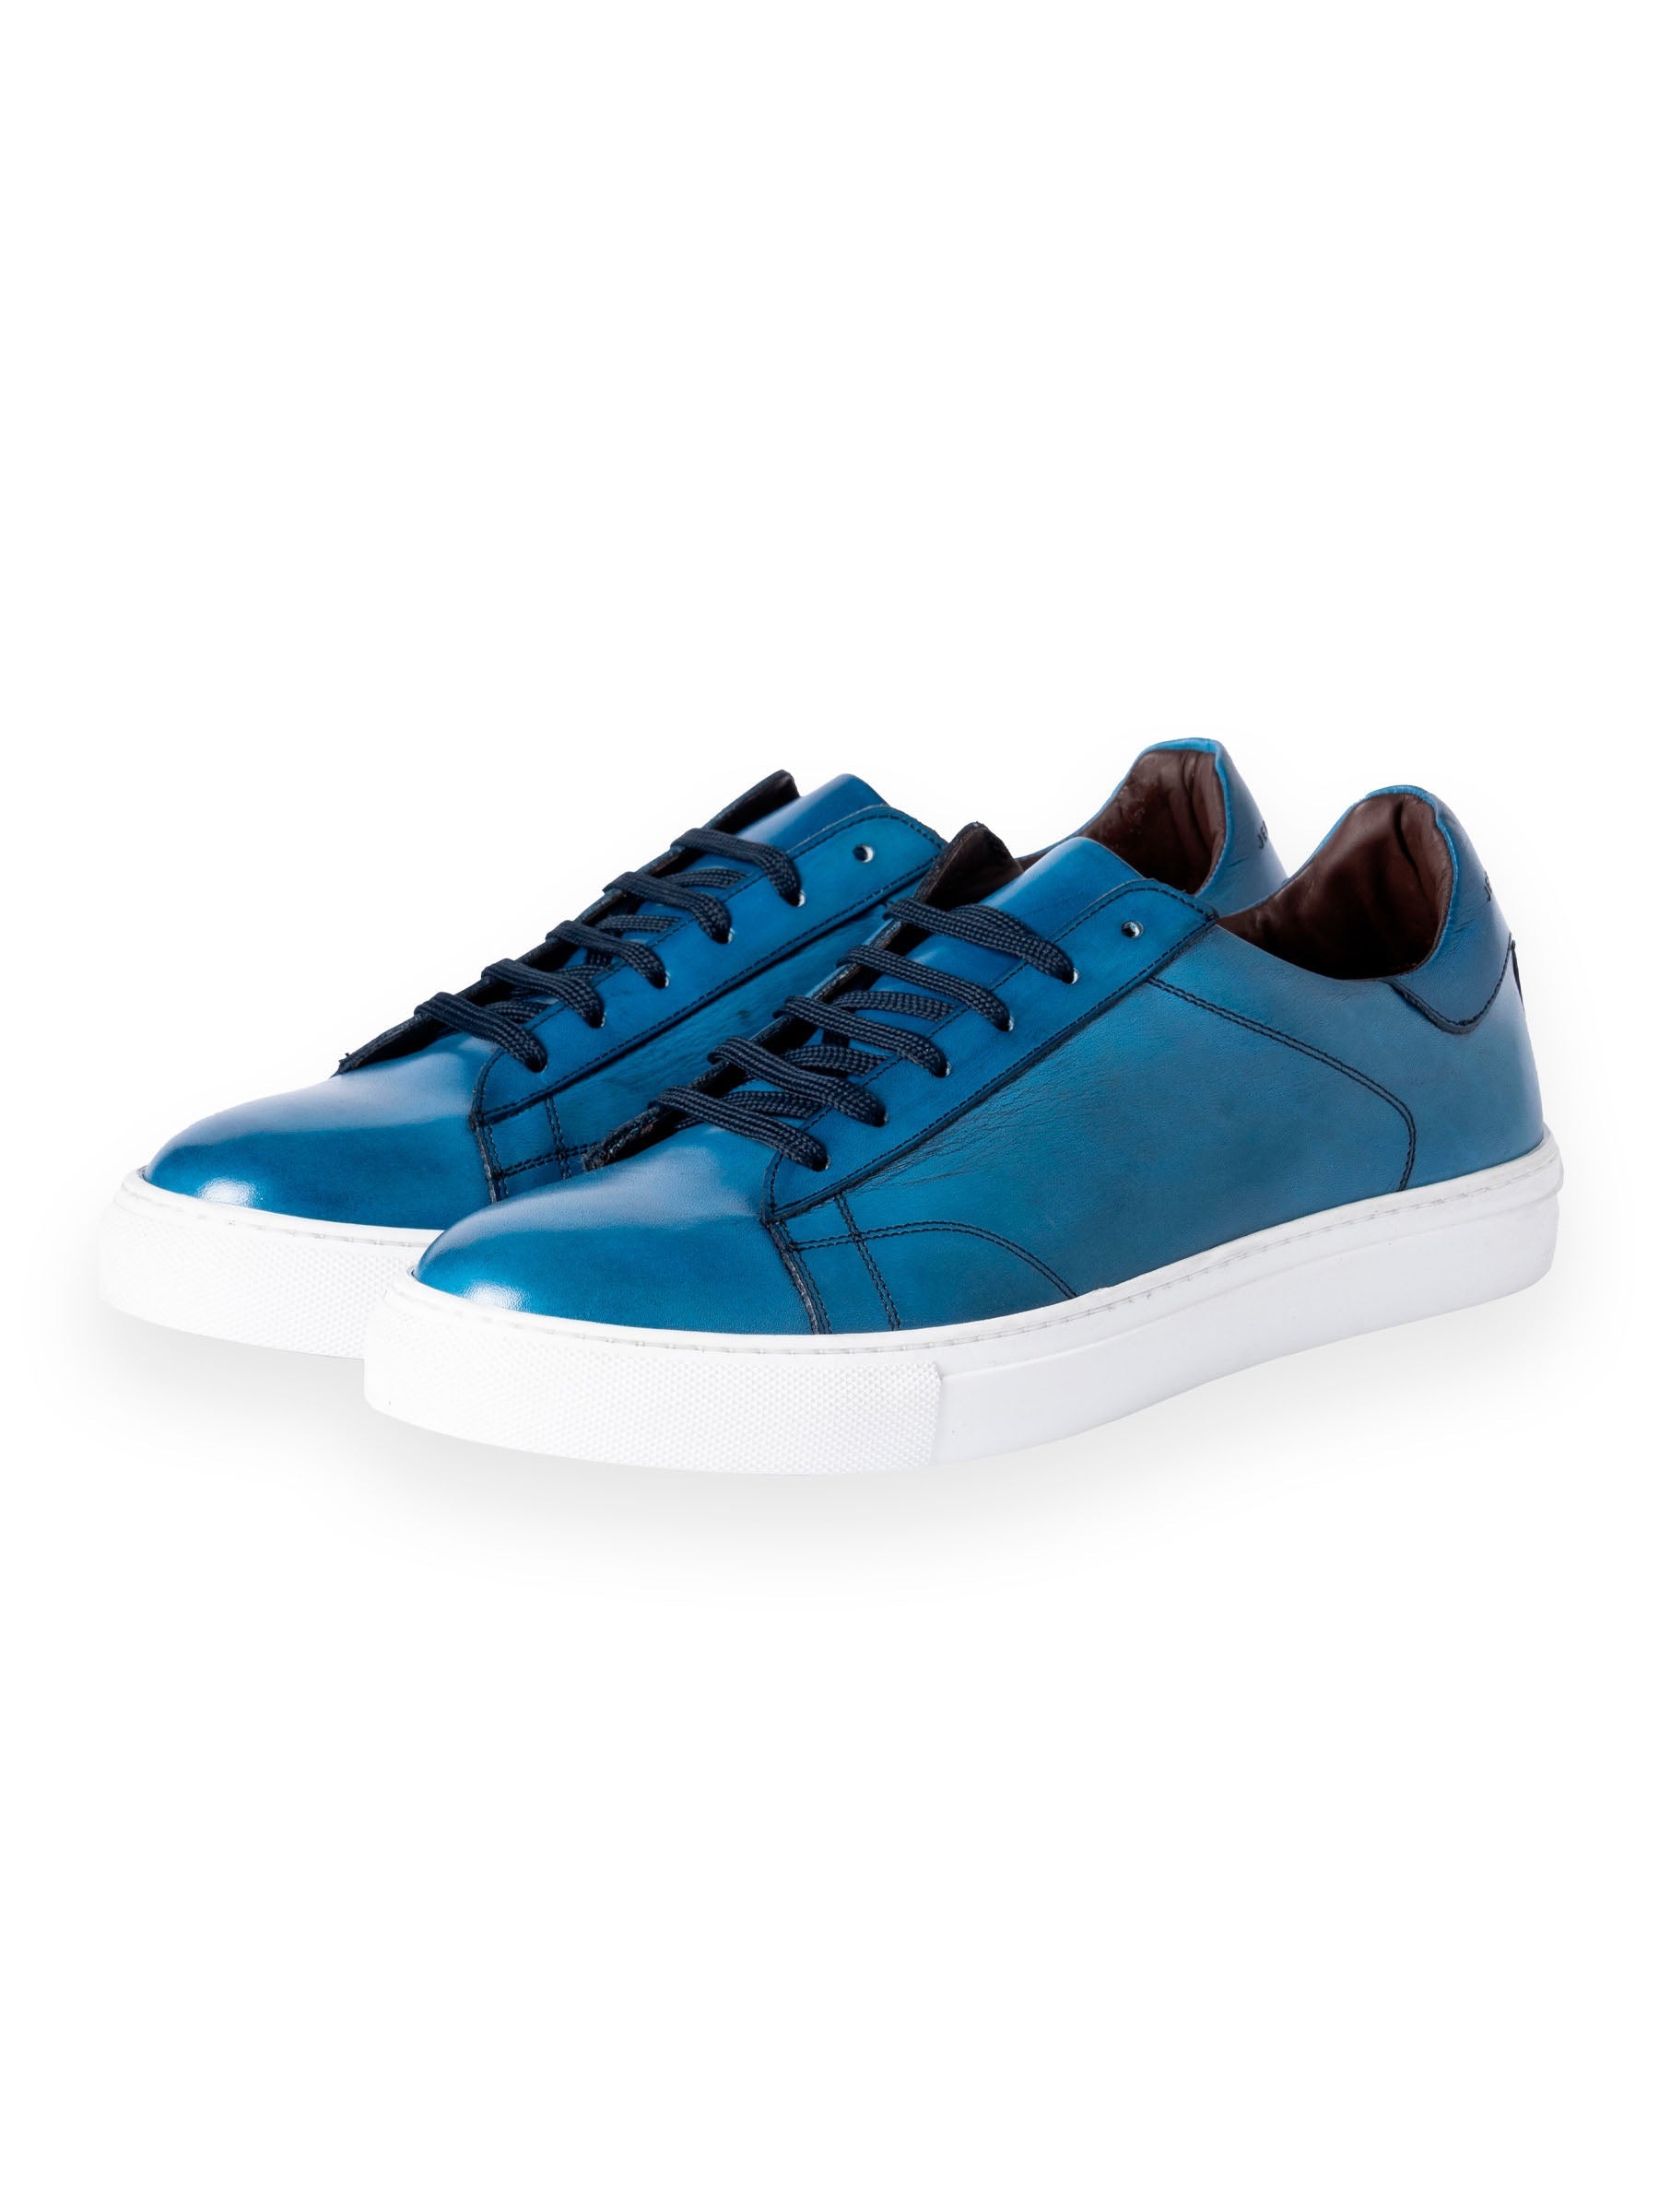 Ferragamo Blue Leather Sneaker Blouse